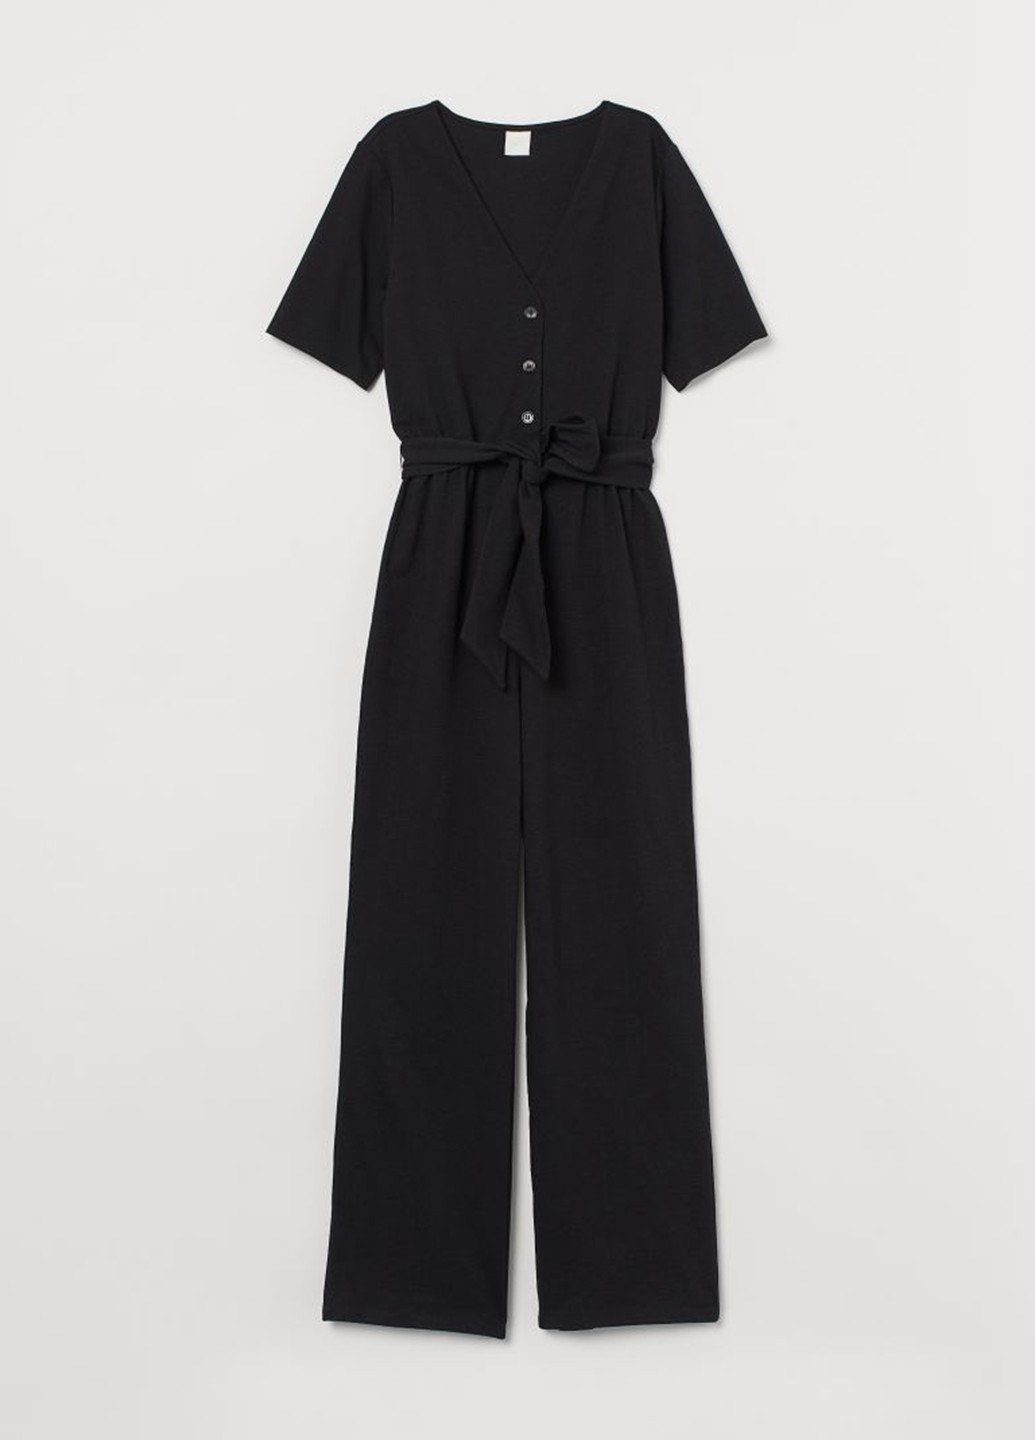 Комбинезон H&M комбинезон-брюки однотонный чёрный кэжуал хлопок, трикотаж